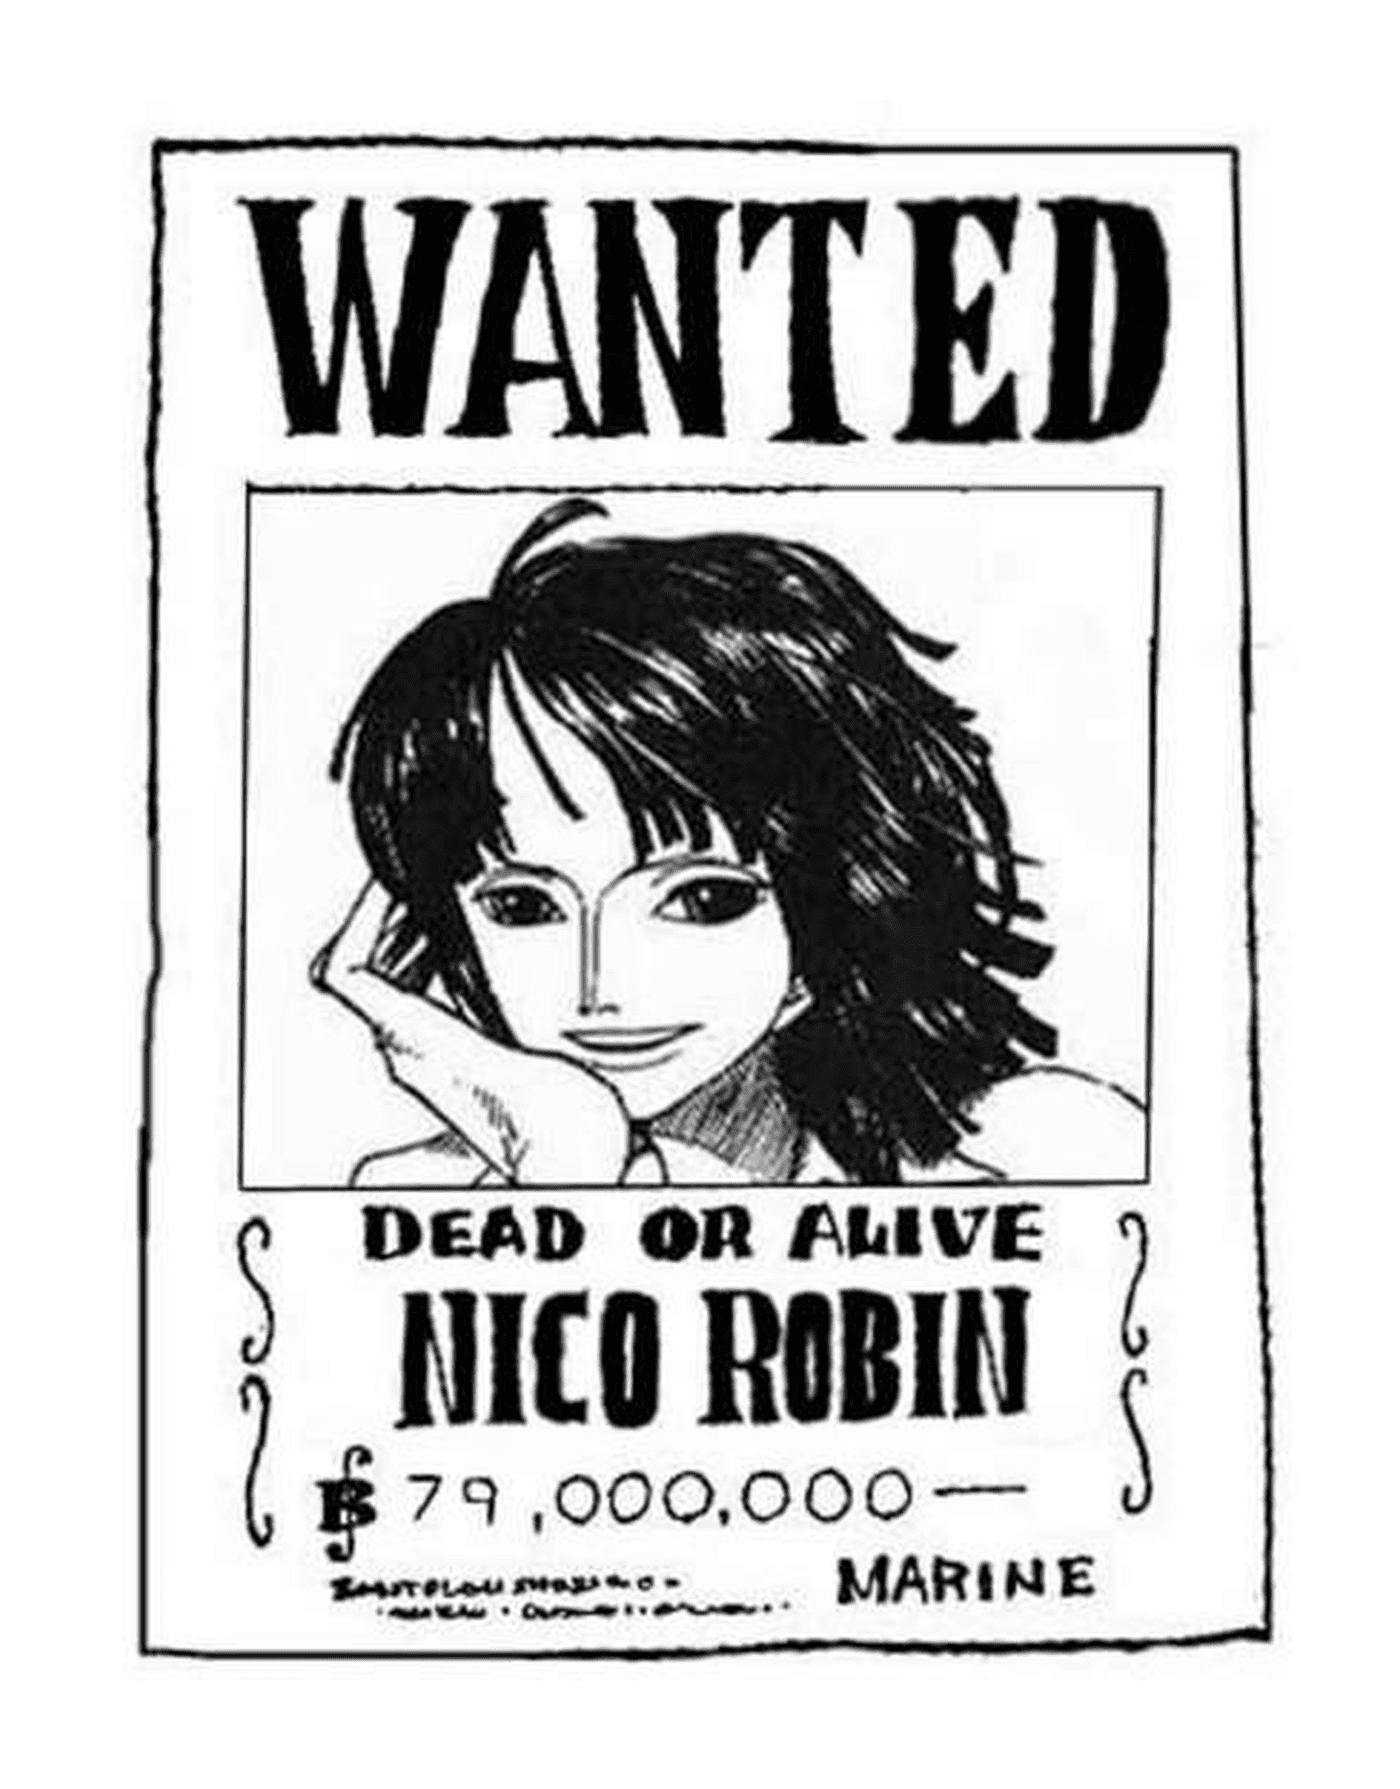  Buscaba a Nico Robin[20420] Buscaba a Nico Robin, vivo o muerto 